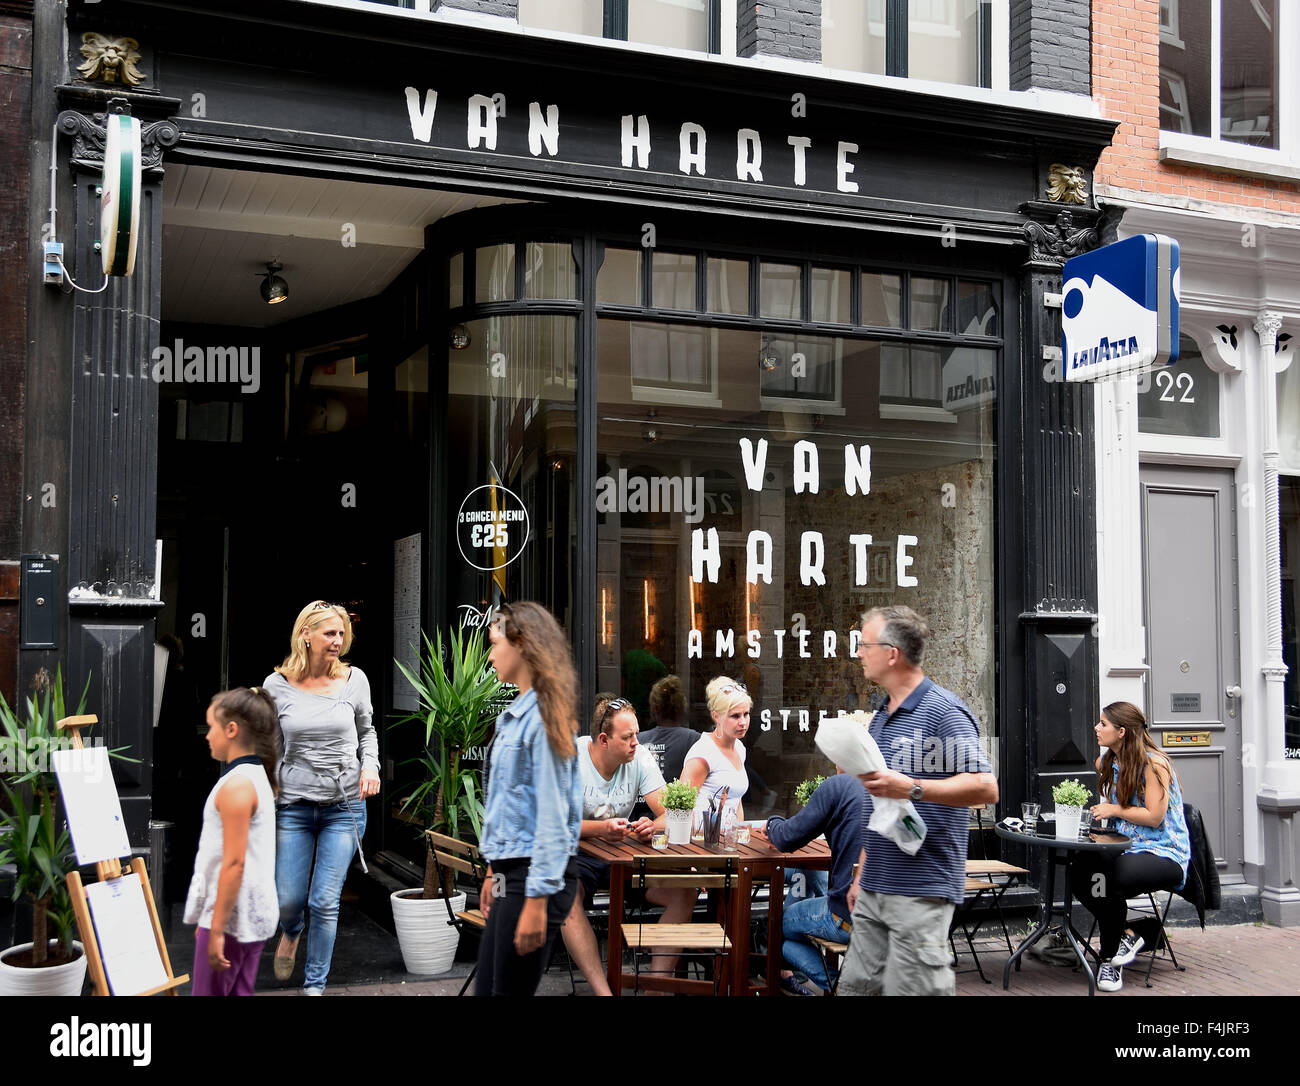 Van Harte - Menschen beim Einkaufen kleine bar Restaurant Shop (de Negen Straatjes - neun kleinen Straßen) Jordaan-Viertel von Amsterdam Niederlande Stockfoto